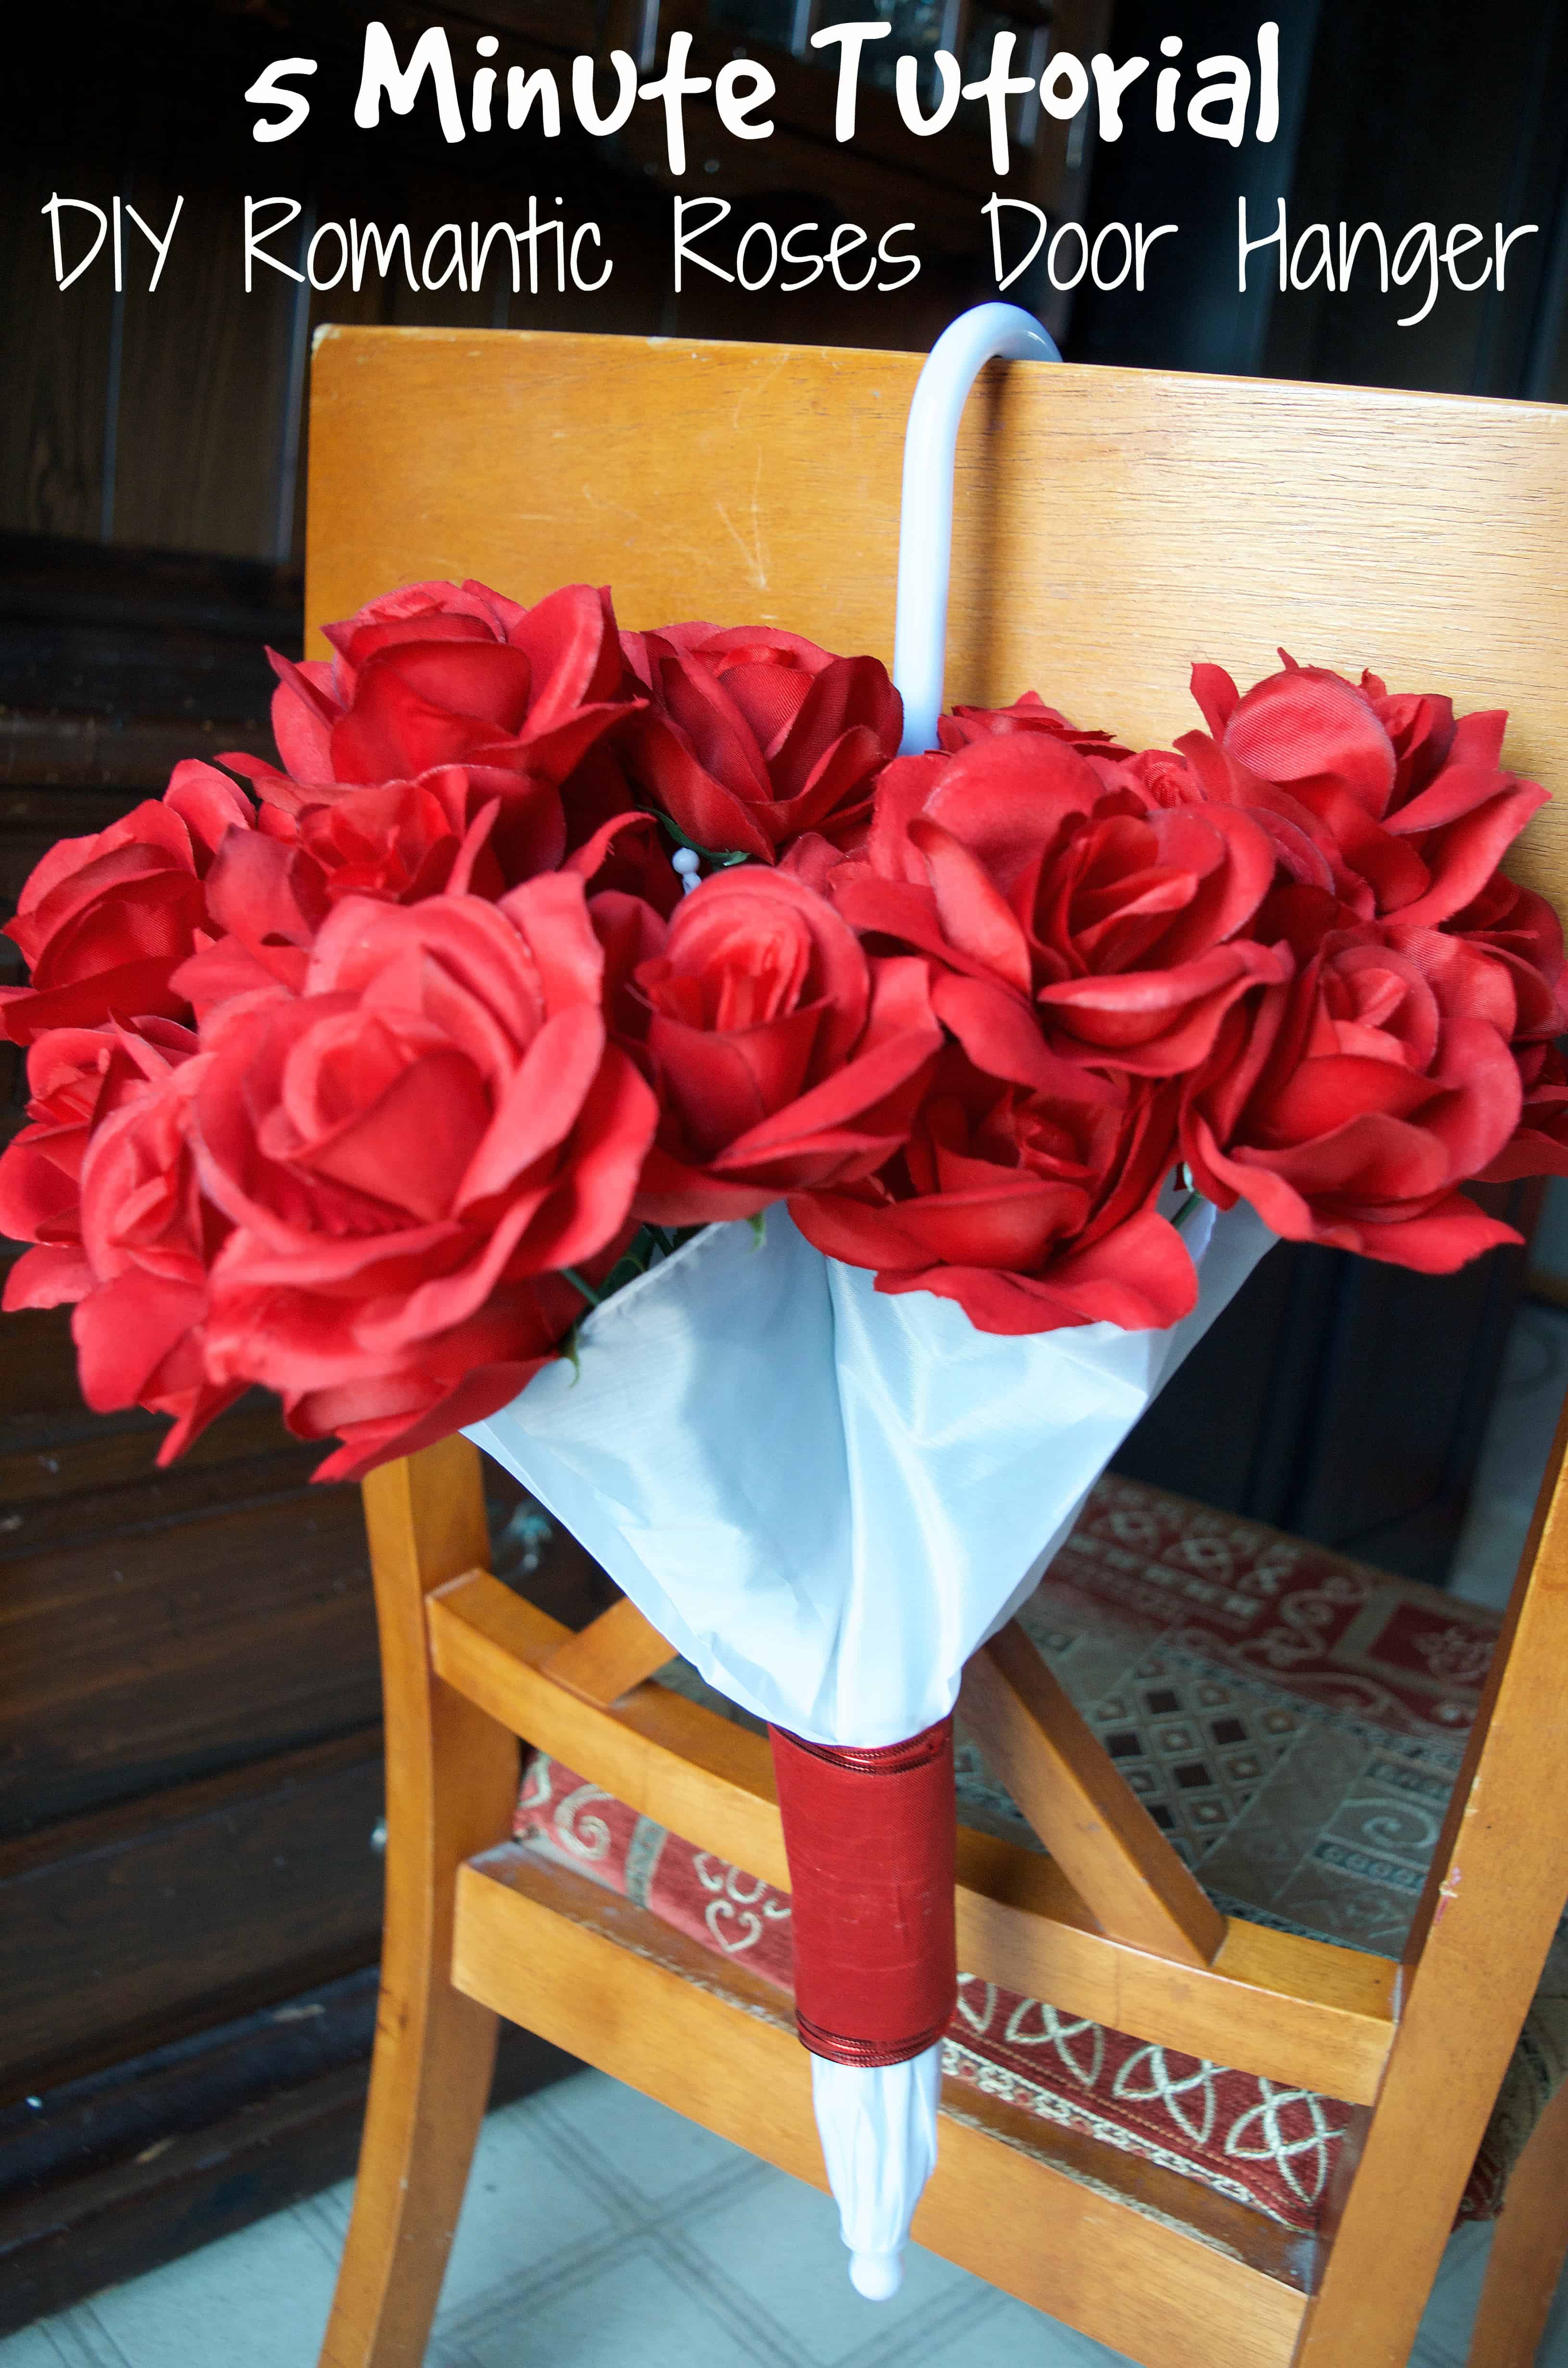 DIY Romantic Valentine's Day Roses in Umbrella Door Hanger3264 x 4928